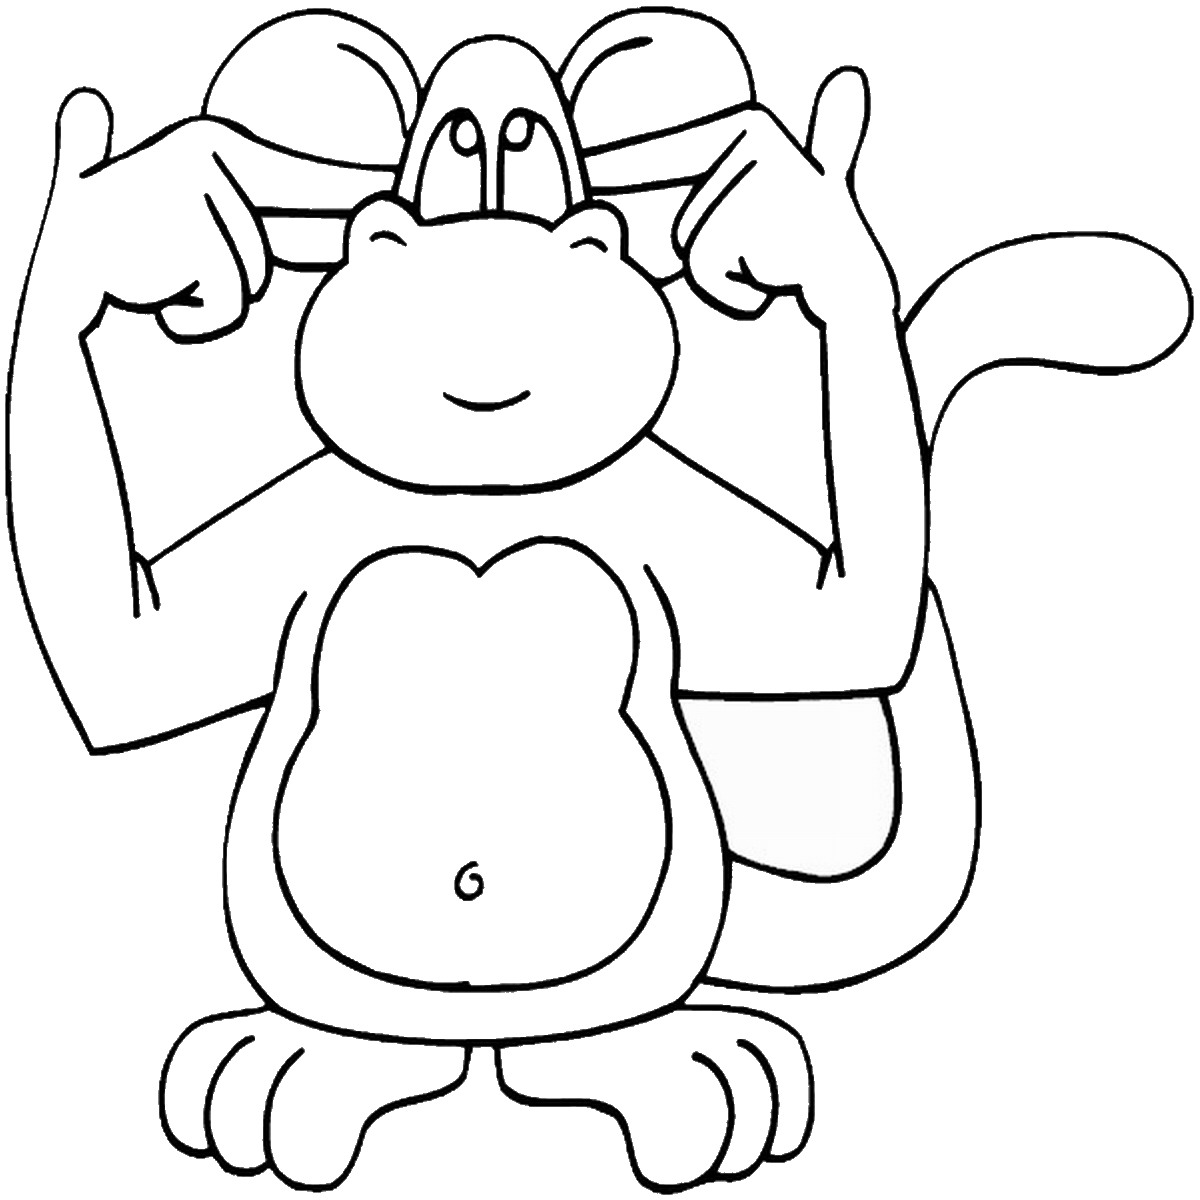 Веселая обезьянка раскраска для детей